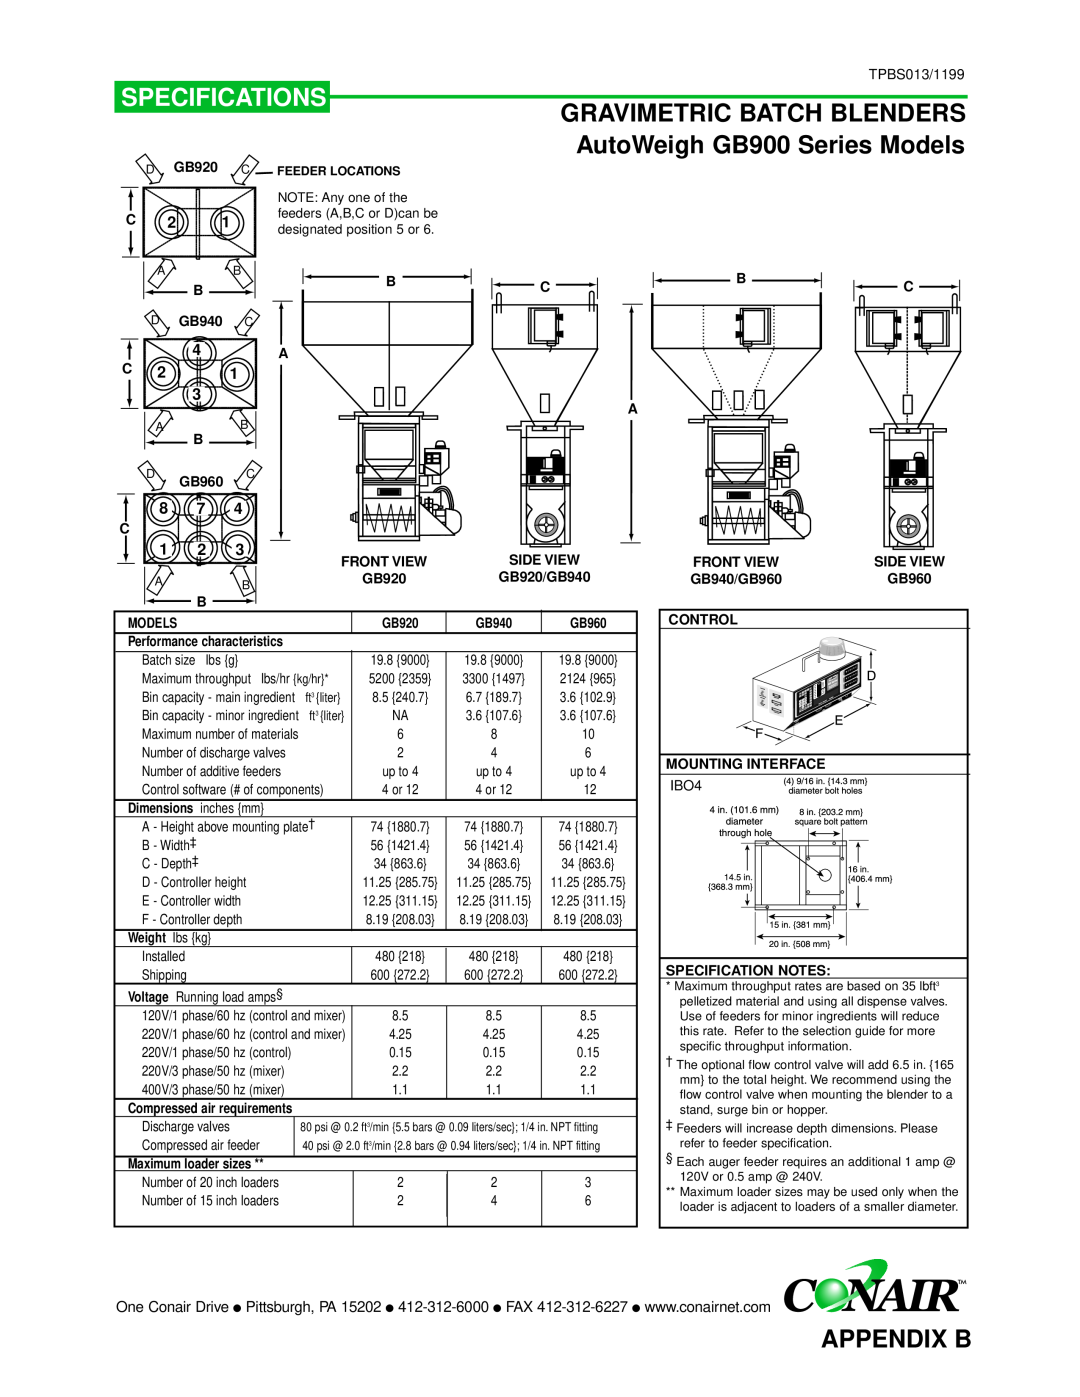 Conair GB/ WSB manual Specifications, Appendix B, C C C 